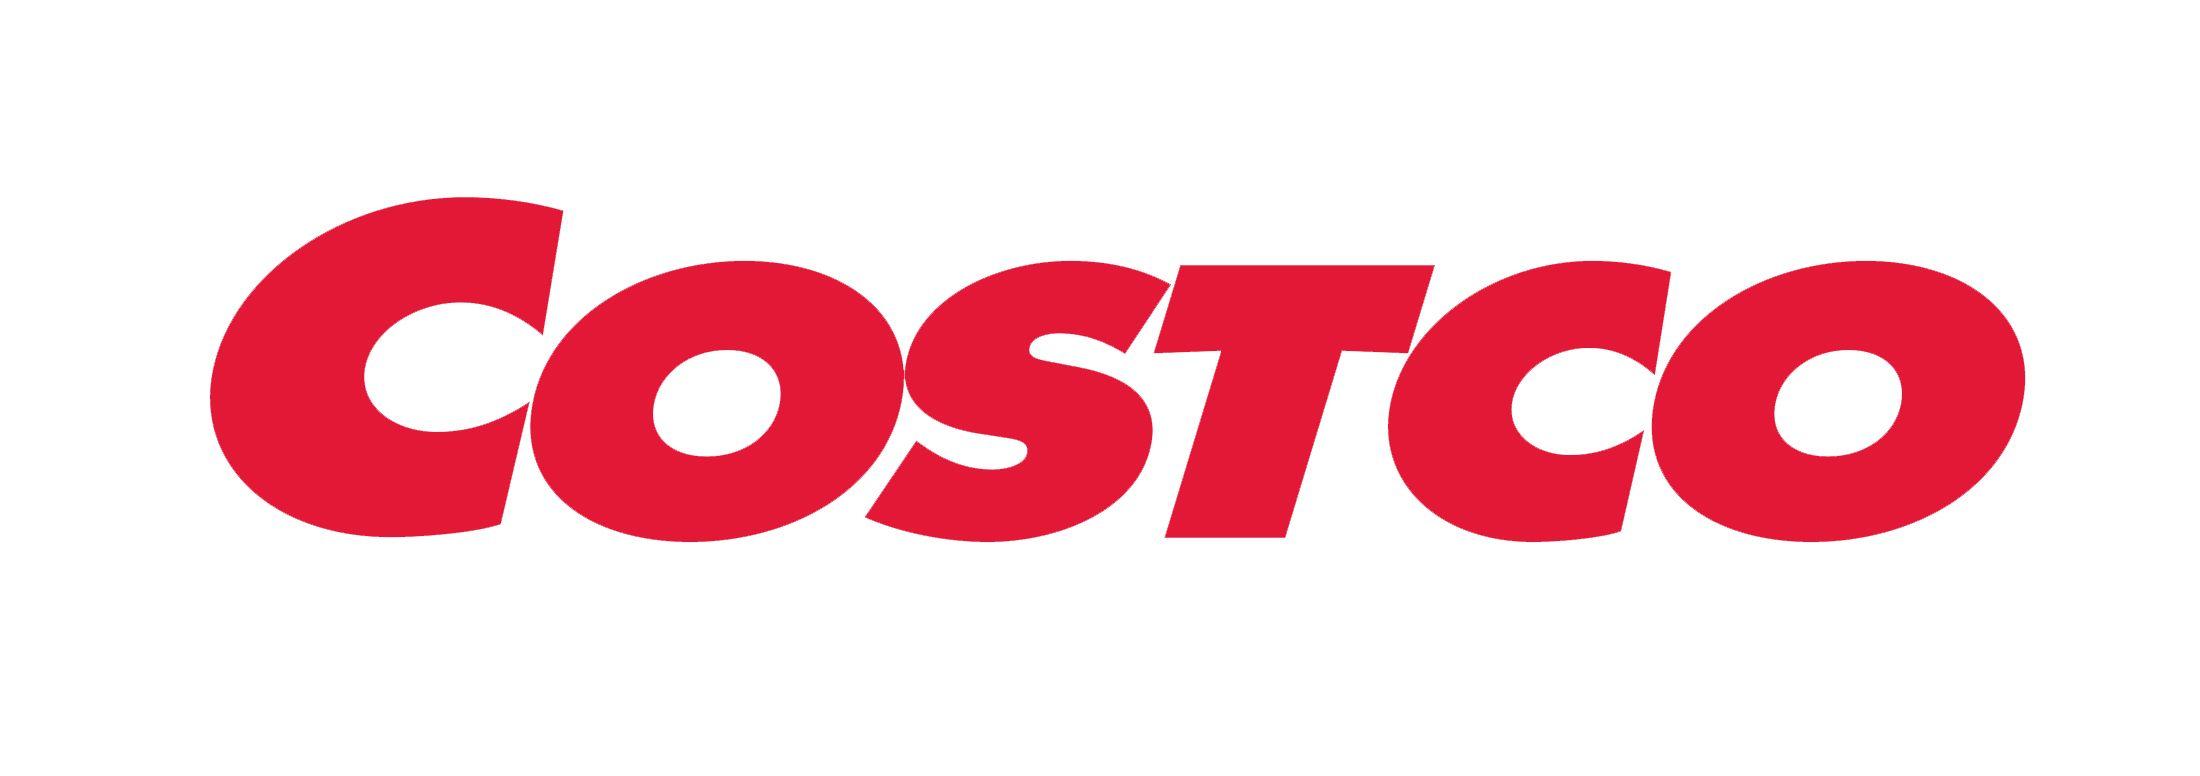 Costco Logo - Costco Logo, Costco Symbol, Meaning, History and Evolution